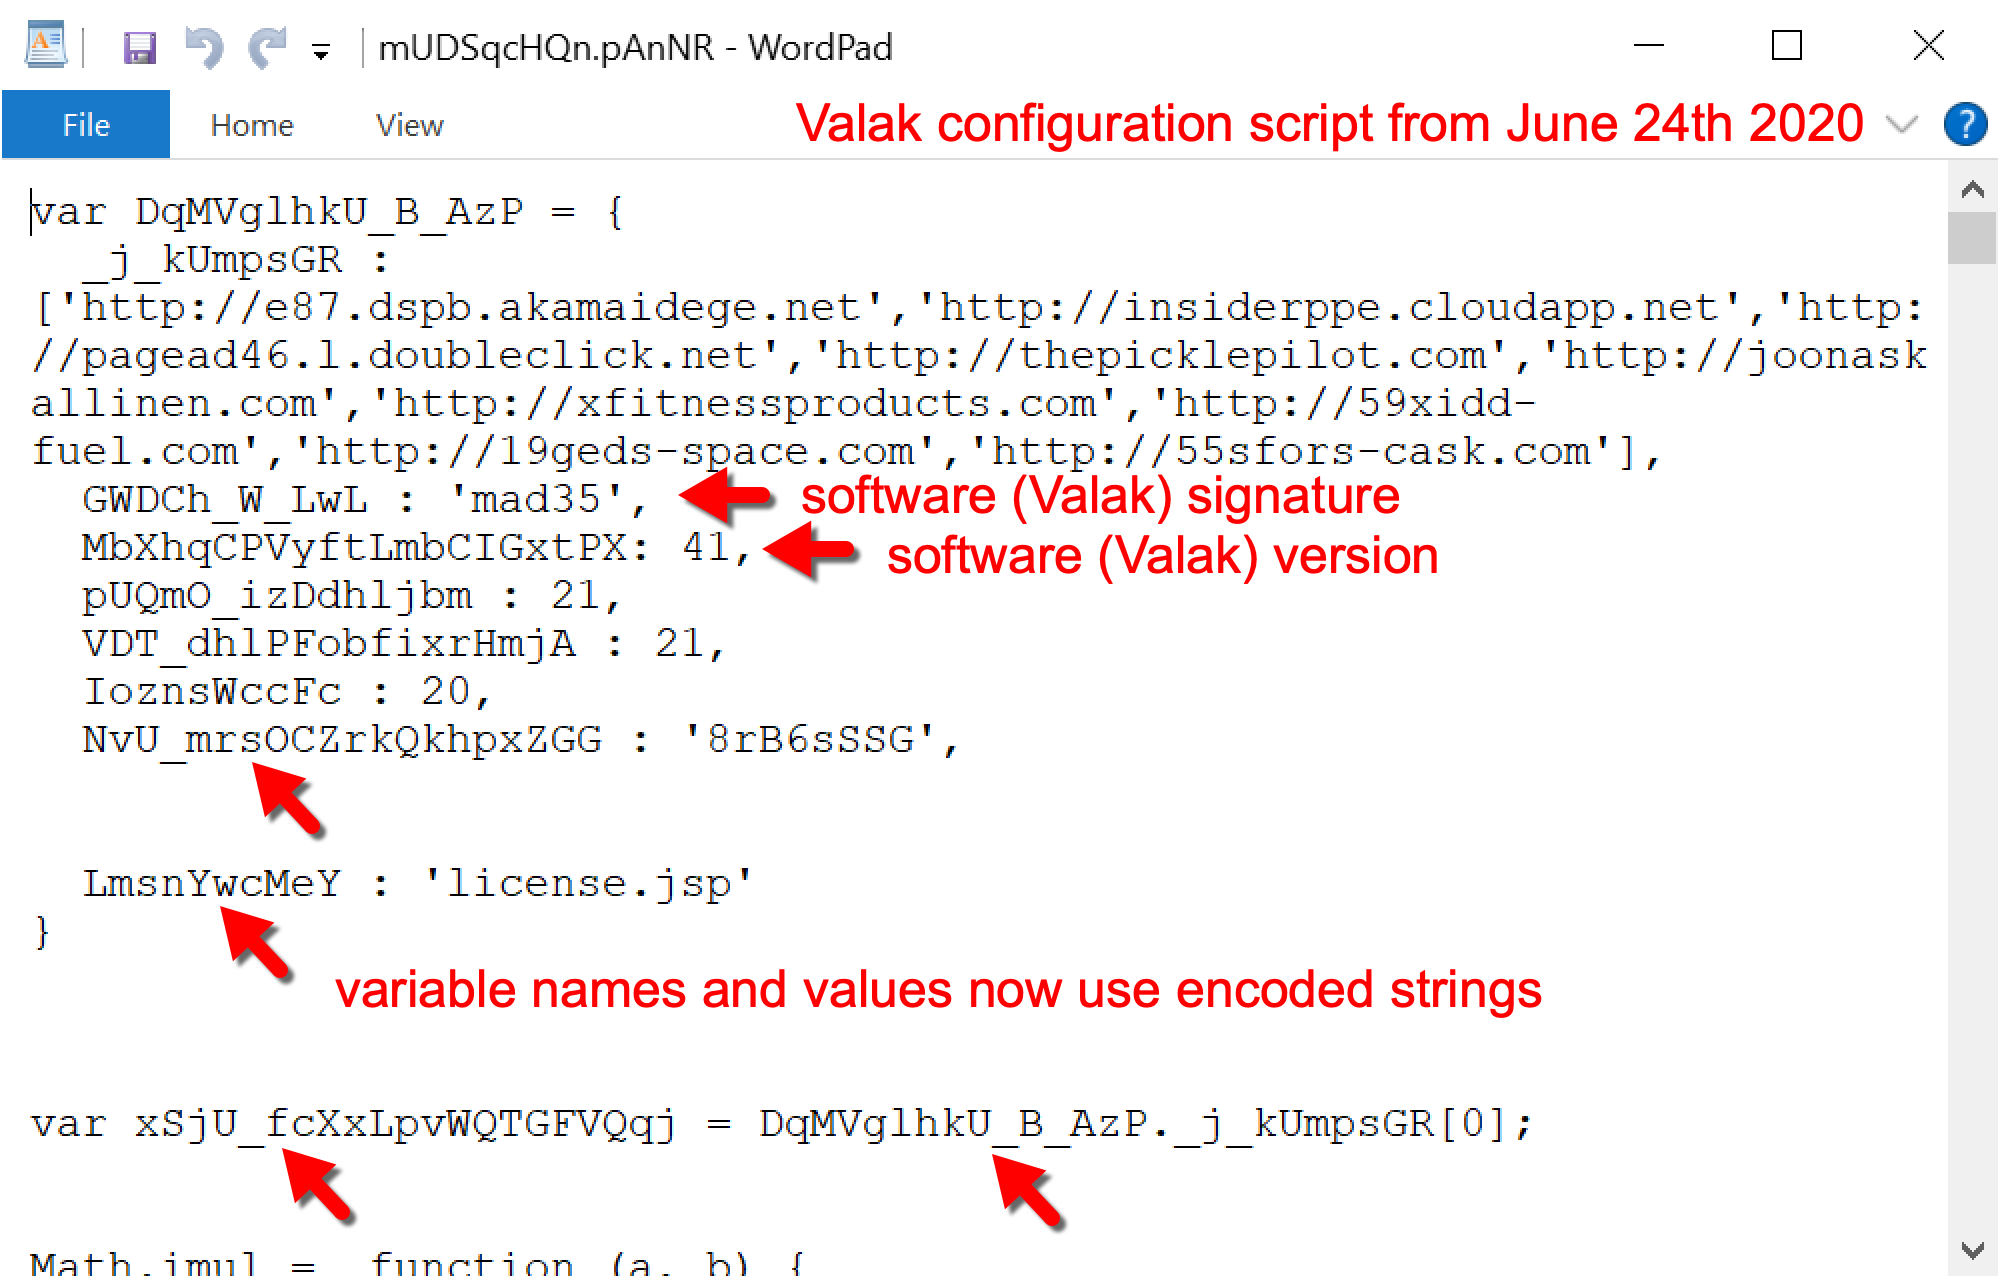 2020年6月24日のValak設定スクリプトでは、ソフトウェア(Valak)シグネチャ、ソフトウェア(Valak)バージョン、および変数名と値にはエンコードされた文字列が使用されています。 